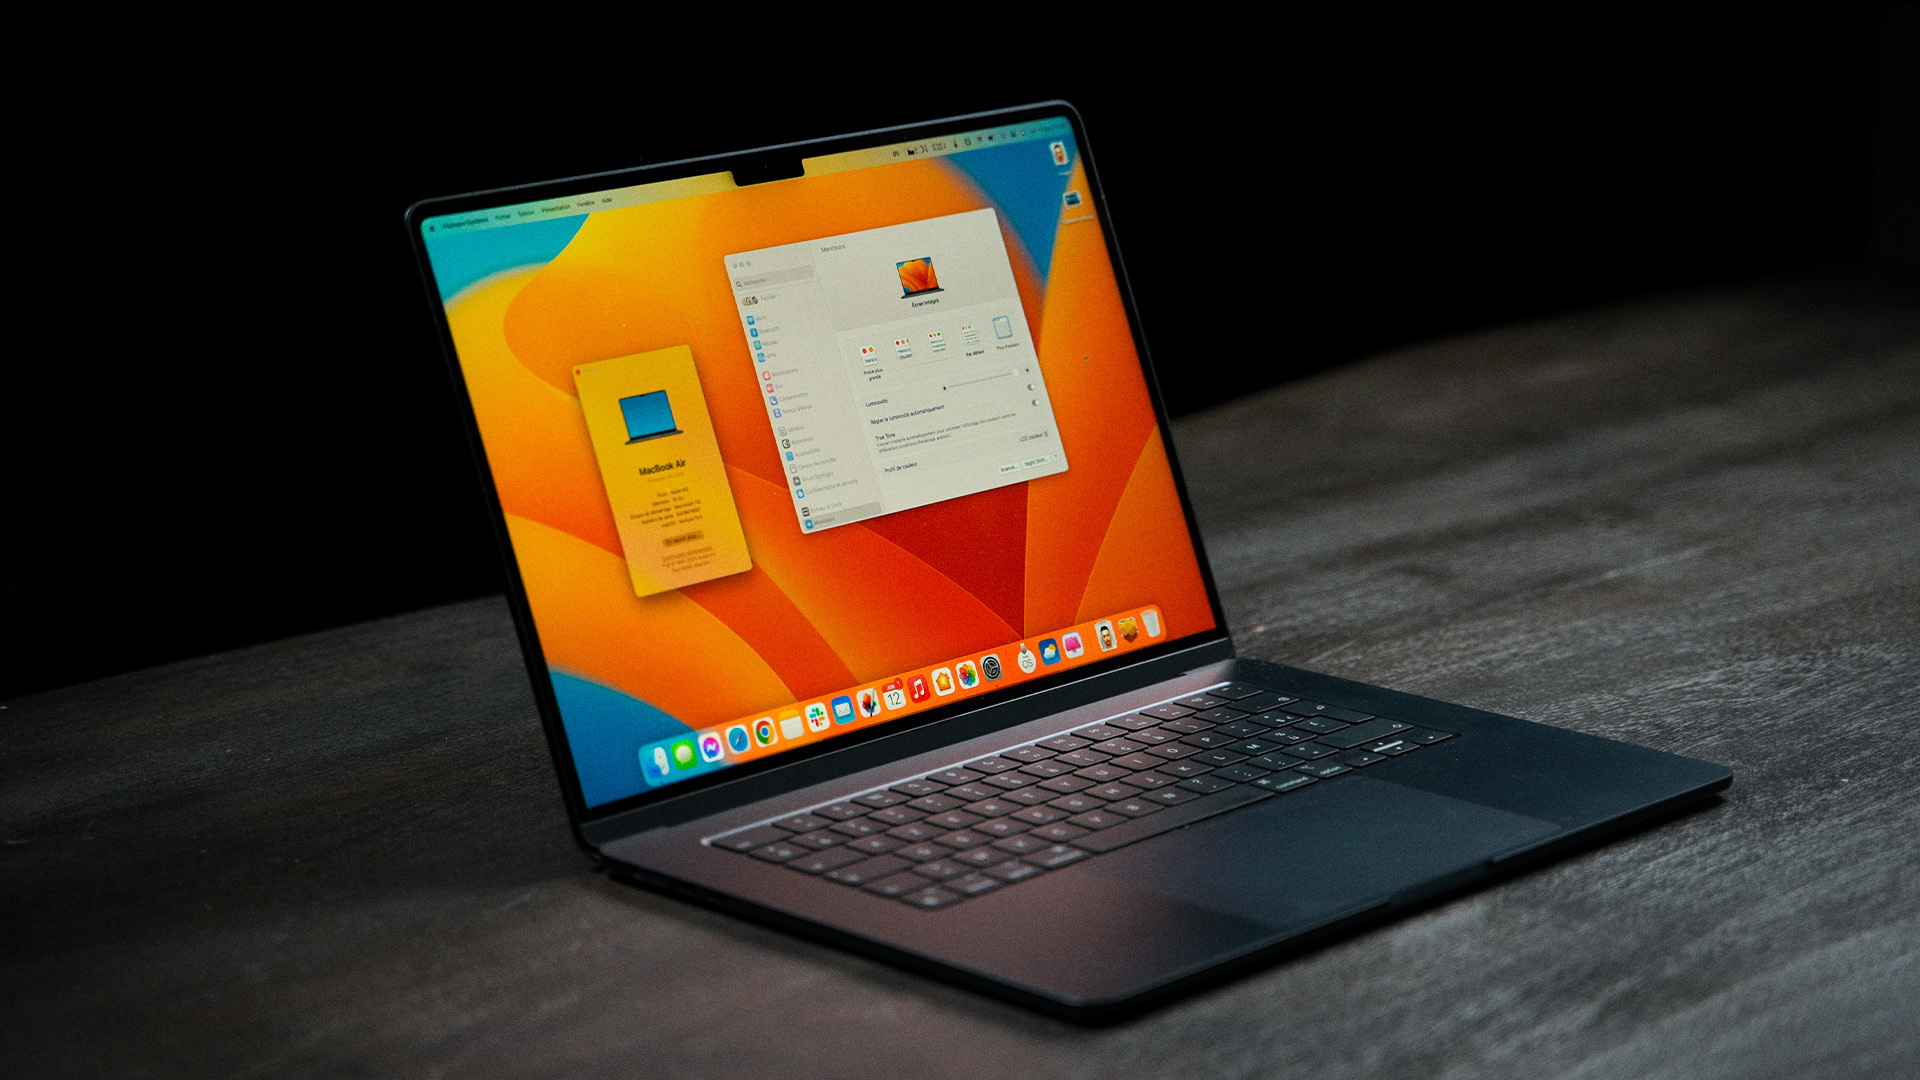 Apple MacBook Pro 16 pouces (2019) : prix, fiche technique, actualités et  test - PC portables - Numerama